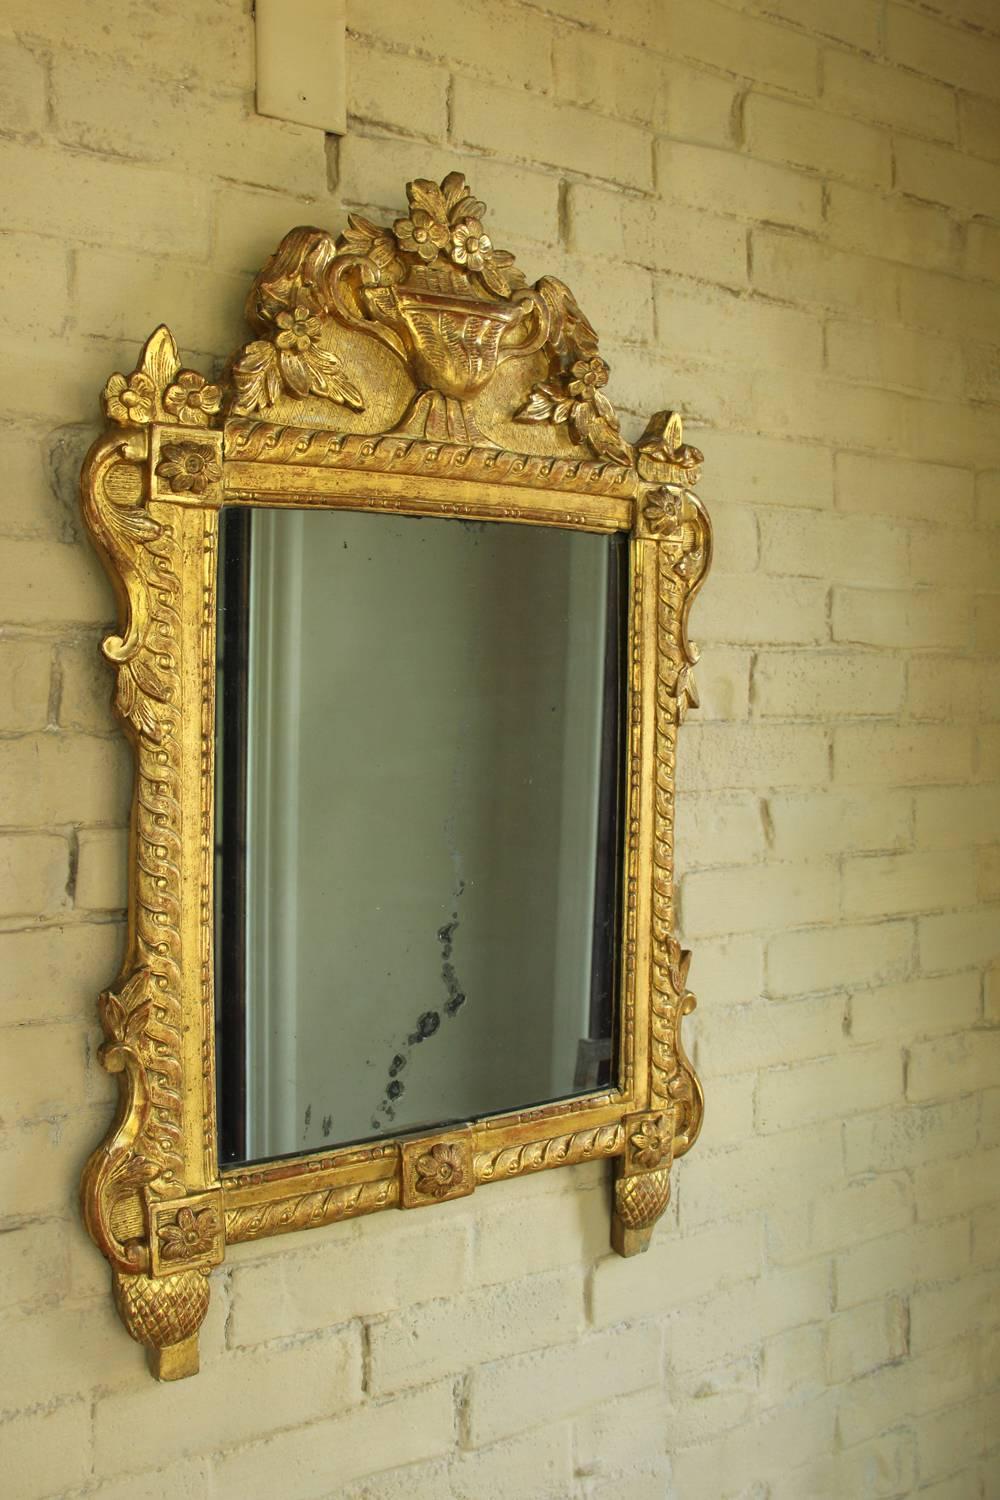 18th century vanity